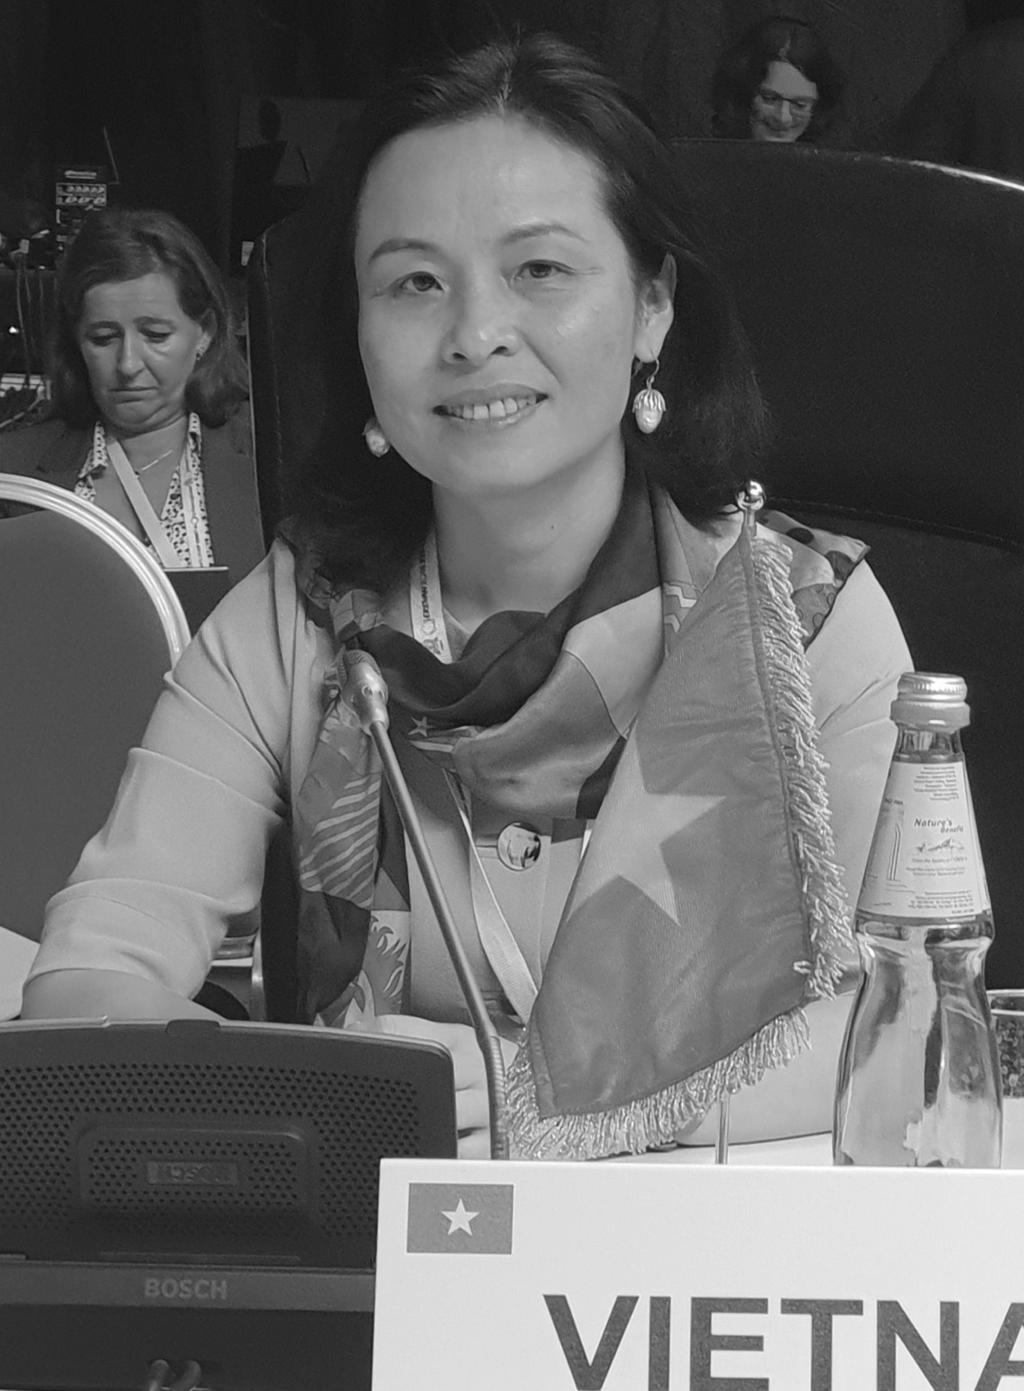 Trước hết sẽ tác động tới thiên nhiên Theo bà Trần Thị Hoàng Mai - Đại sứ Việt Nam tại Tổ chức Giáo dục, Khoa học và Văn hóa của Liên Hợp quốc (UNESCO), cần phải tuân thủ các quy định liên quan đến